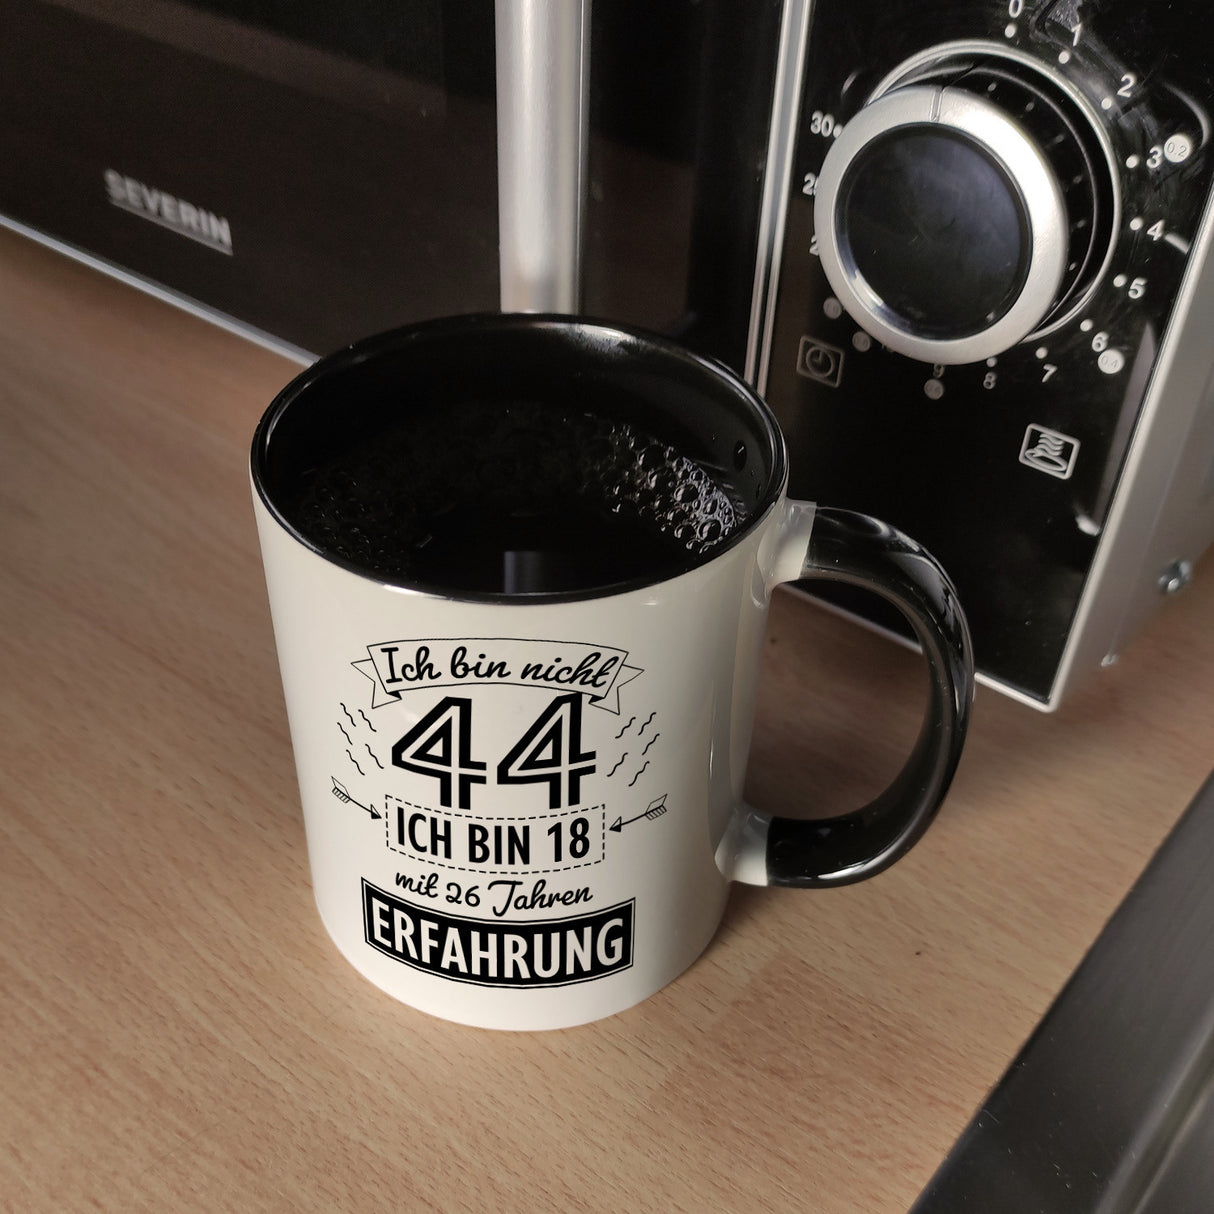 Witziger Kaffeebecher für den 44. Geburtstag mit Motiv: Erfahrung